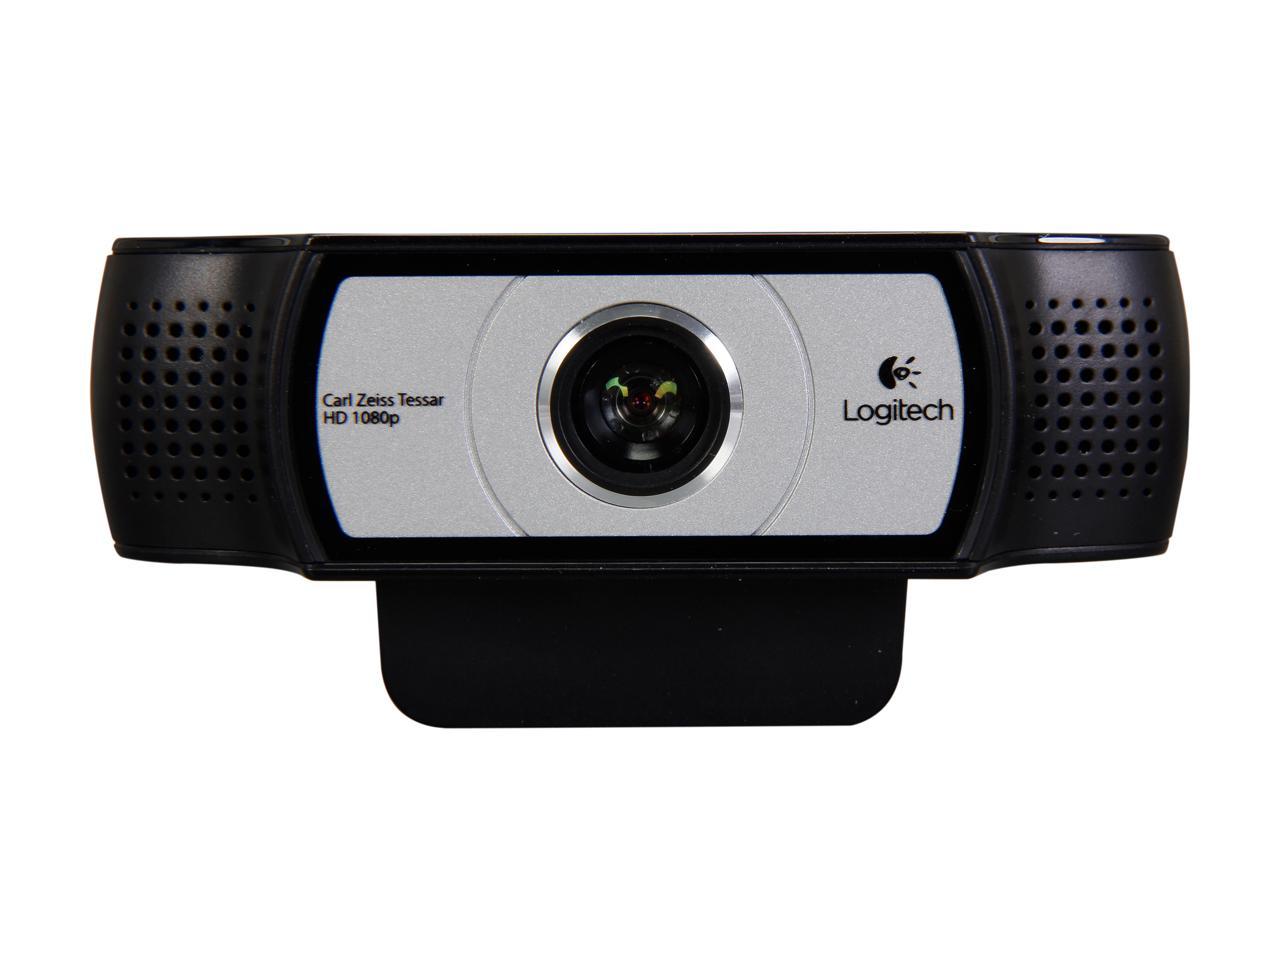 Vakantie fluit paars Logitech C930e Webcam - USB 2.0 - Newegg.com